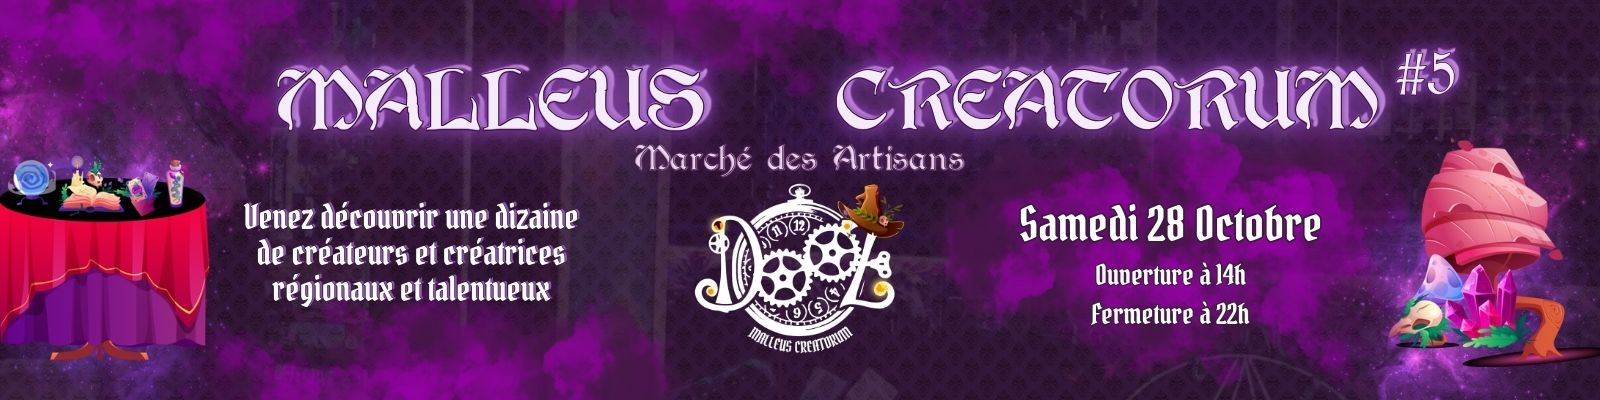 Malleus Creatorum #5 - Marché des Artisans